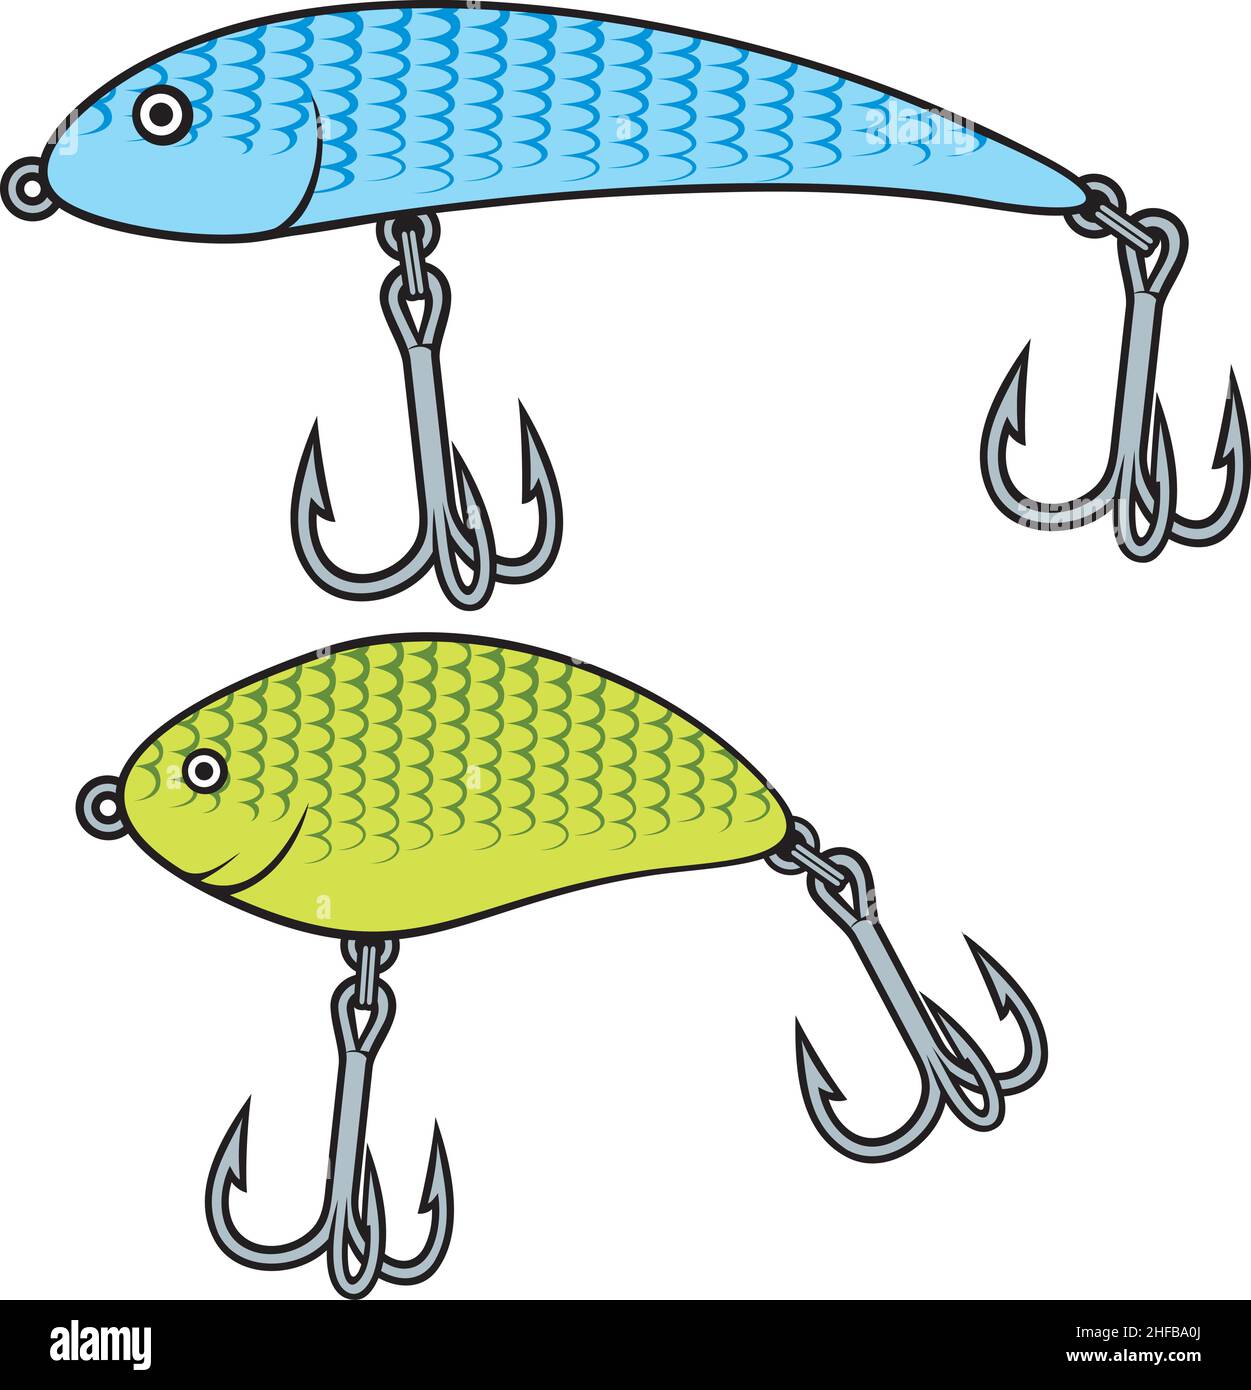 Samples Fishing Bait Jig Float Hooks Stock Vector (Royalty Free